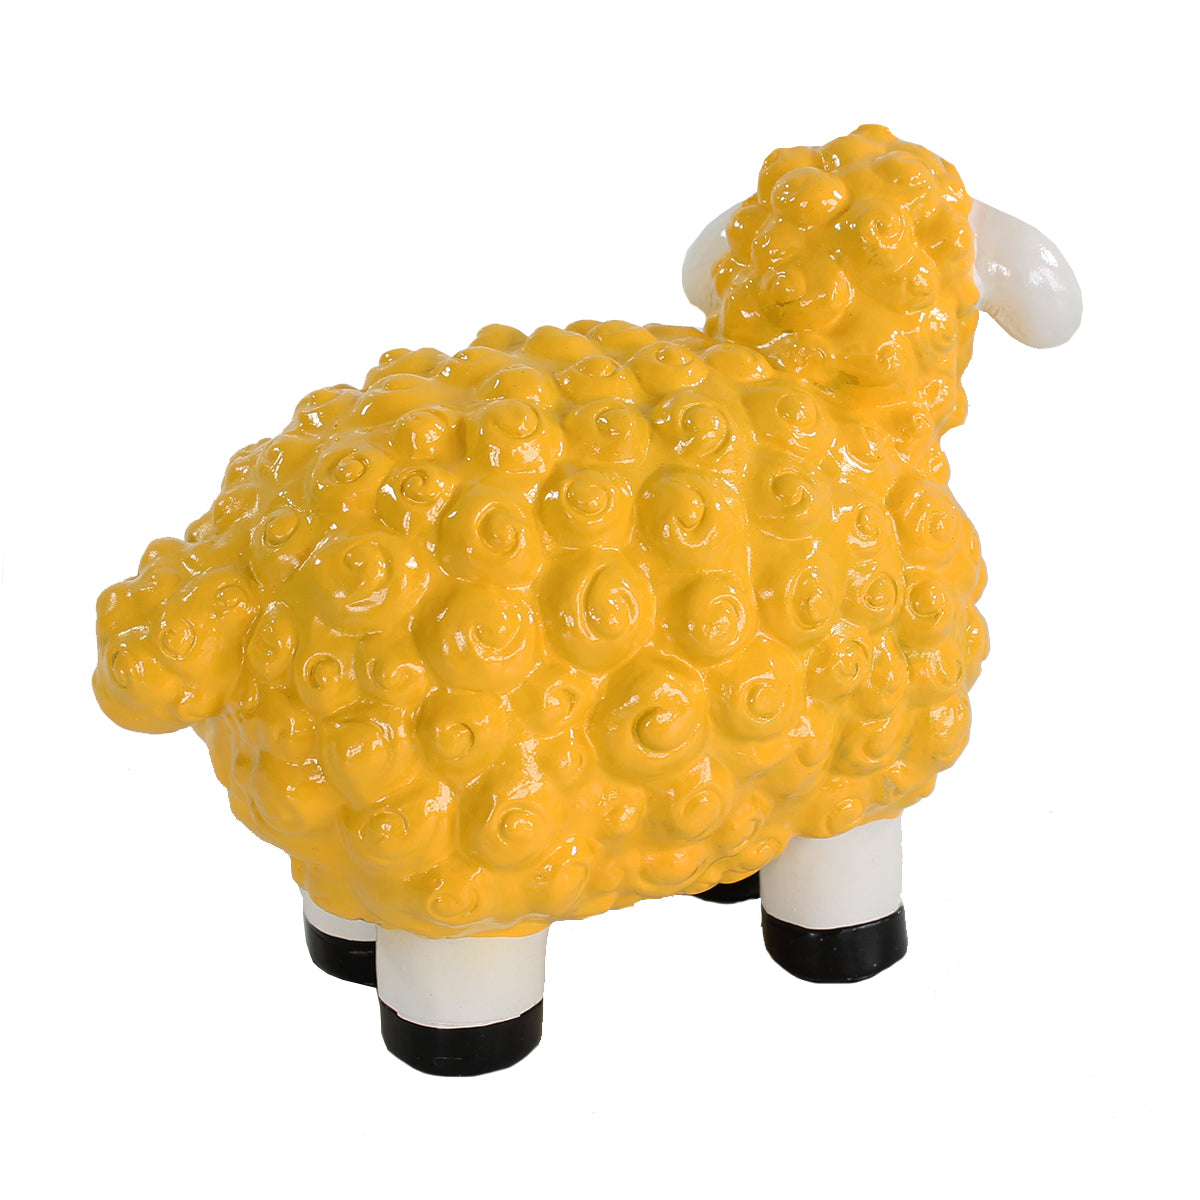 Buntes Deko Schaf gelb Gartenfigur Schaf Dekofigur Schaf lustige Schafe